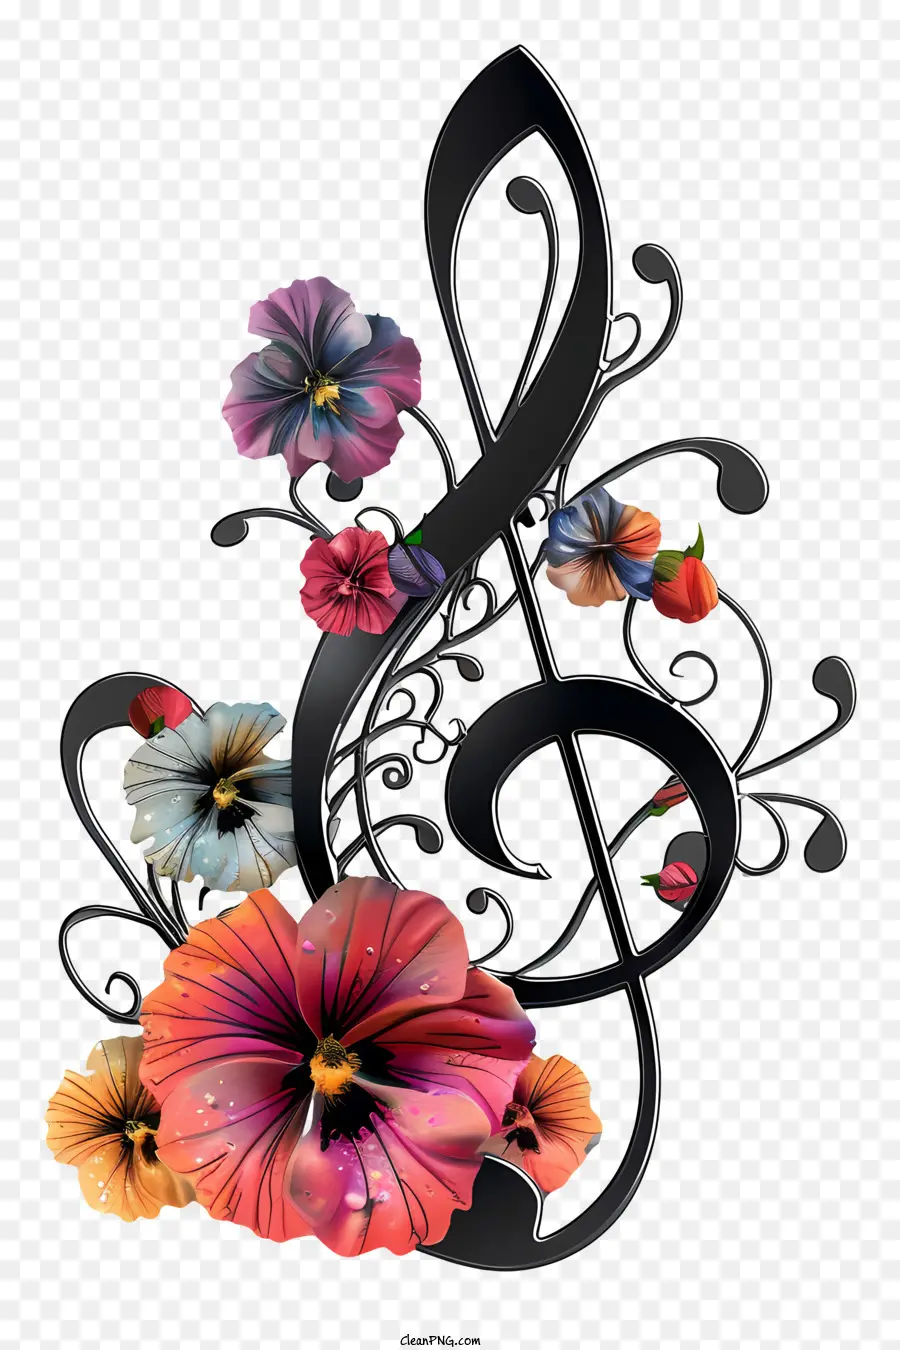 Musik Noten - Silber Music Sheet mit Blumenelementen und Farben